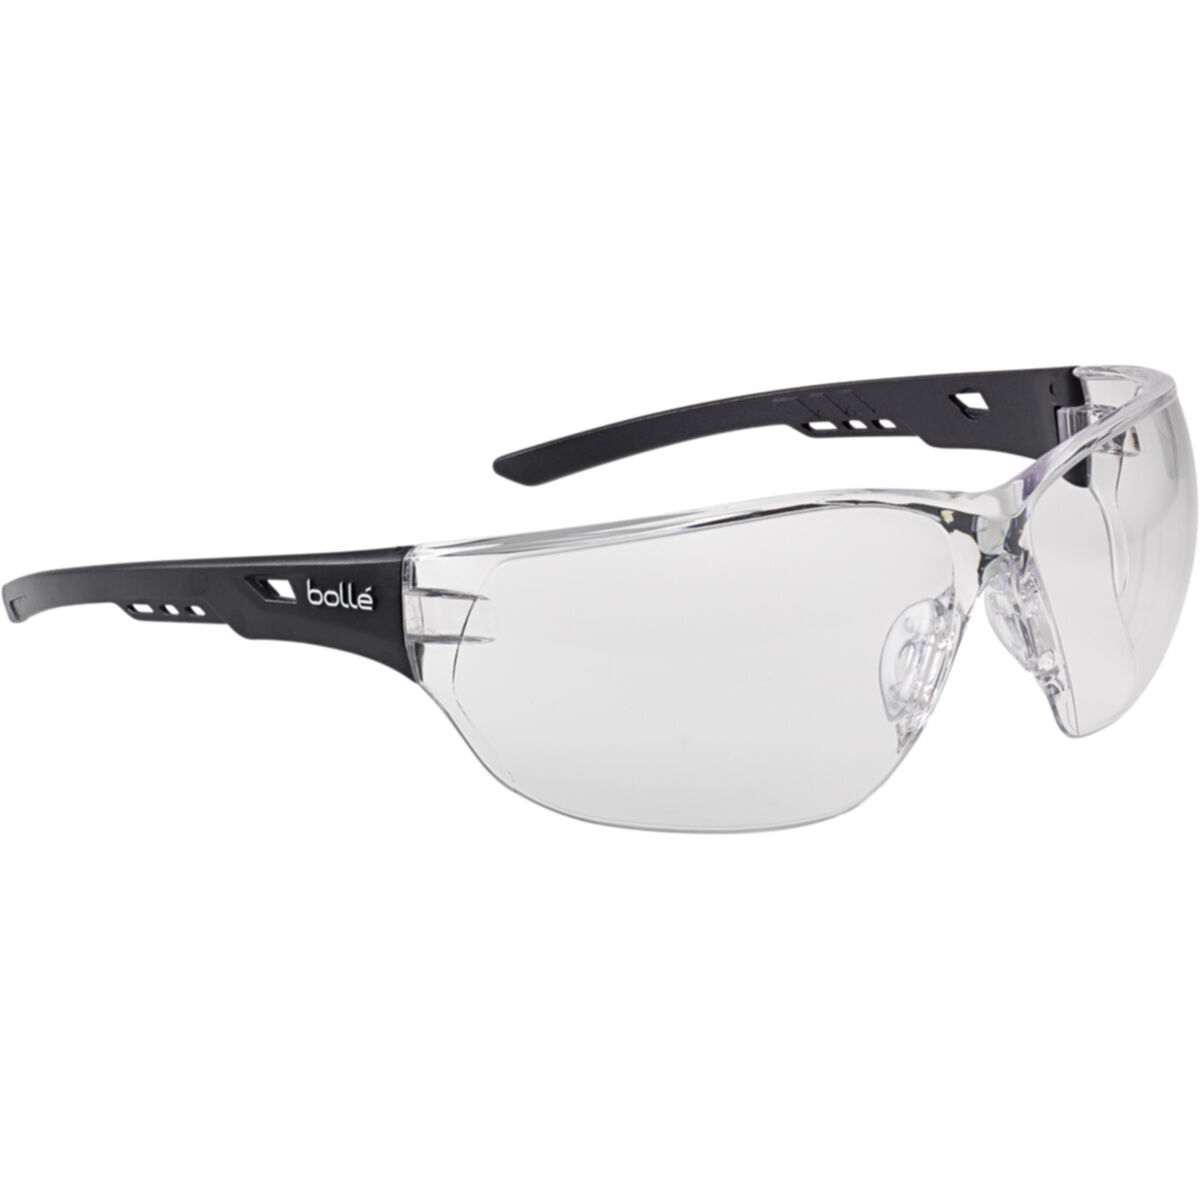 Bolle Ness Lunettes de sécurité Bolle lunettes anti-rayures anti-brouillard Lentille nesspsi x2 